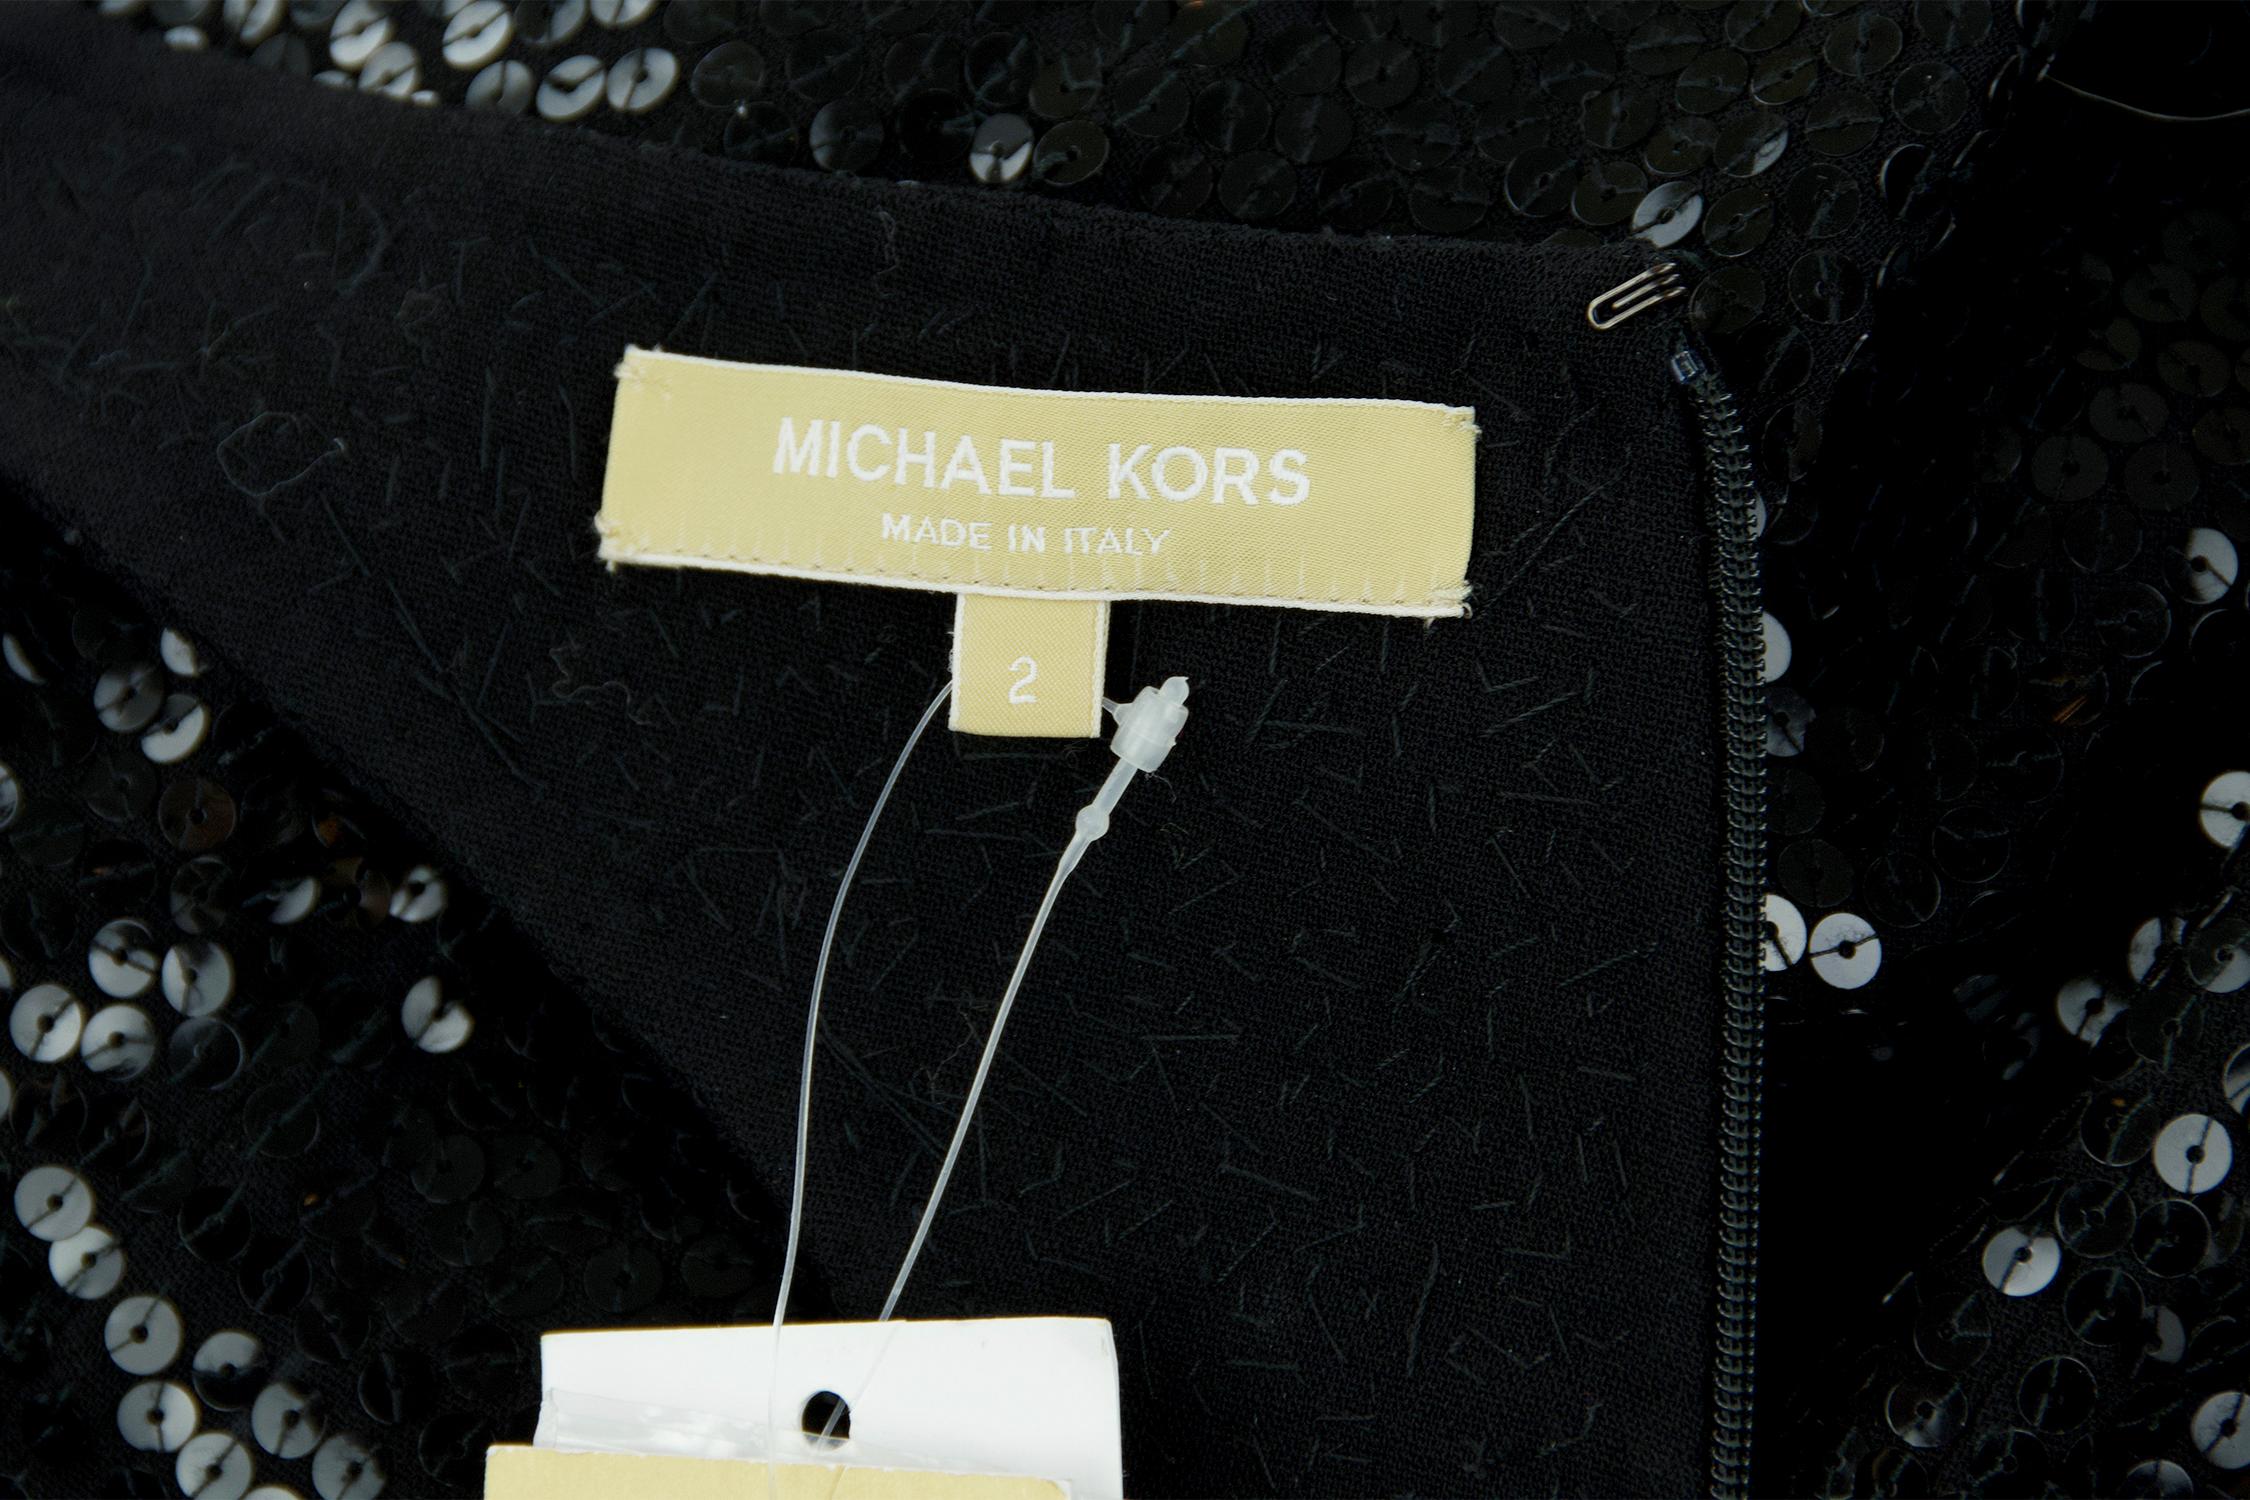 Michael Kors Black Sequin Jumpsuit - Size 2 For Sale 2